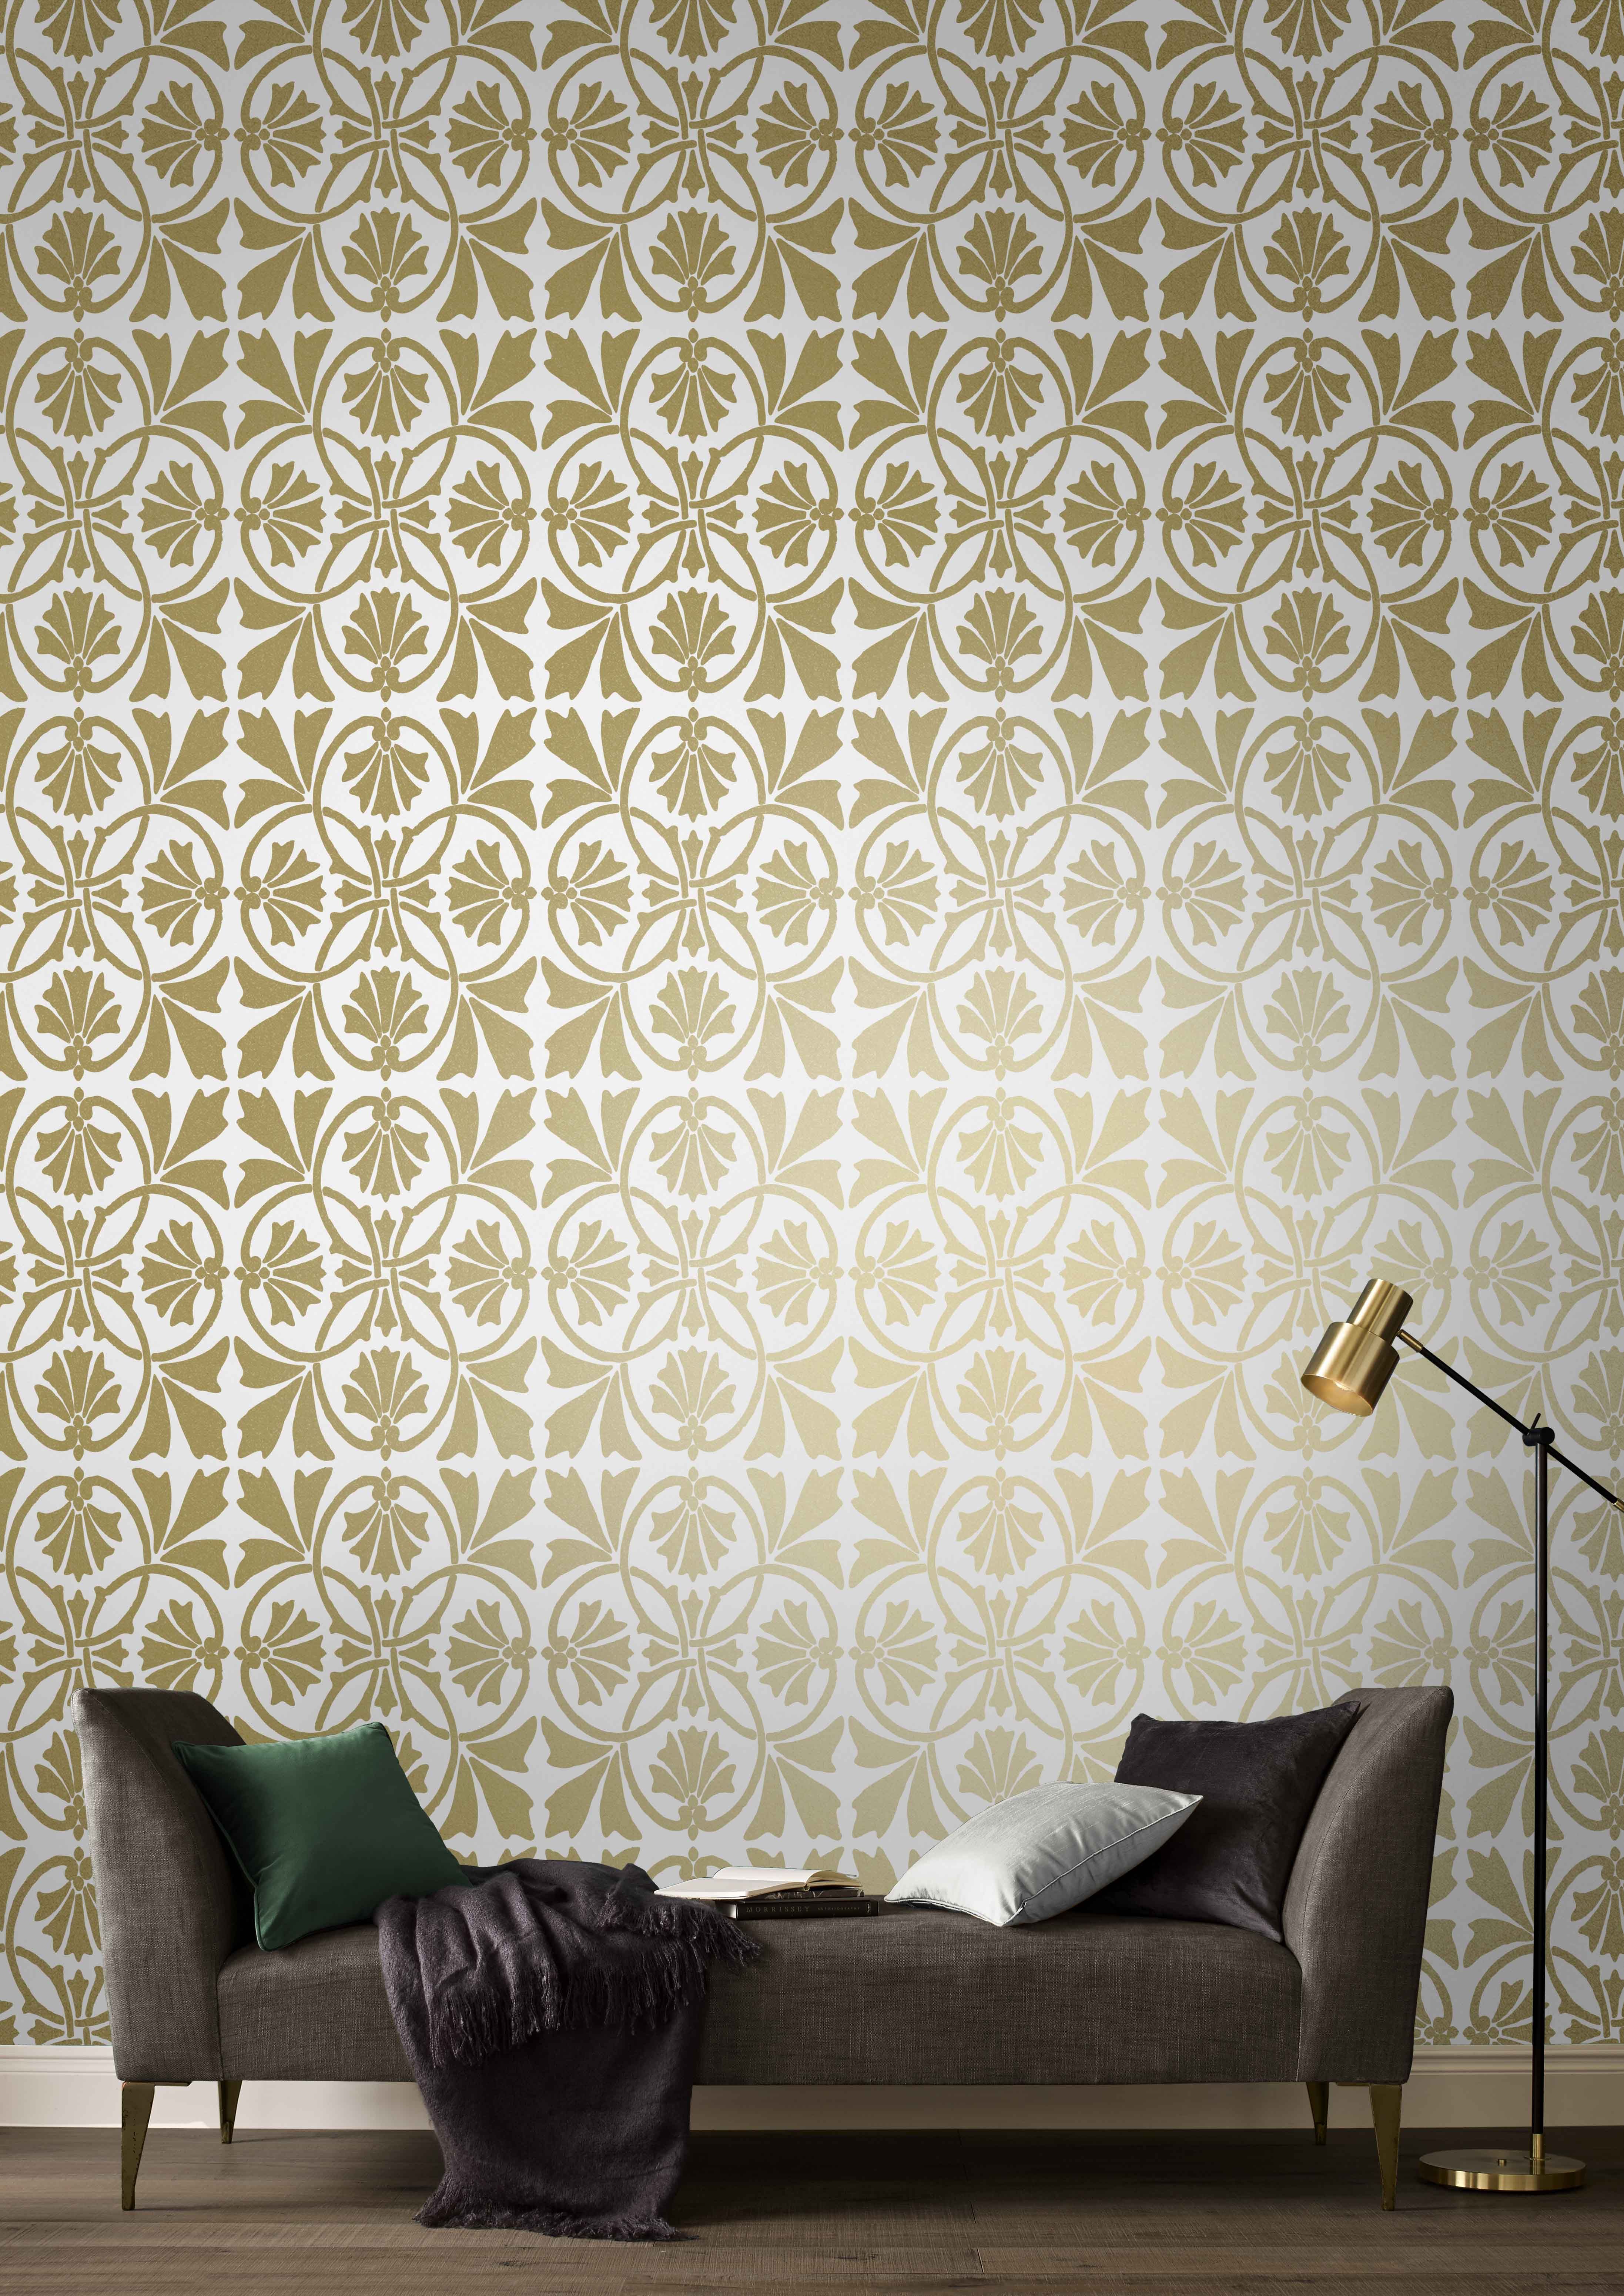 royal boy wallpaper,wallpaper,wall,wall sticker,interior design,room